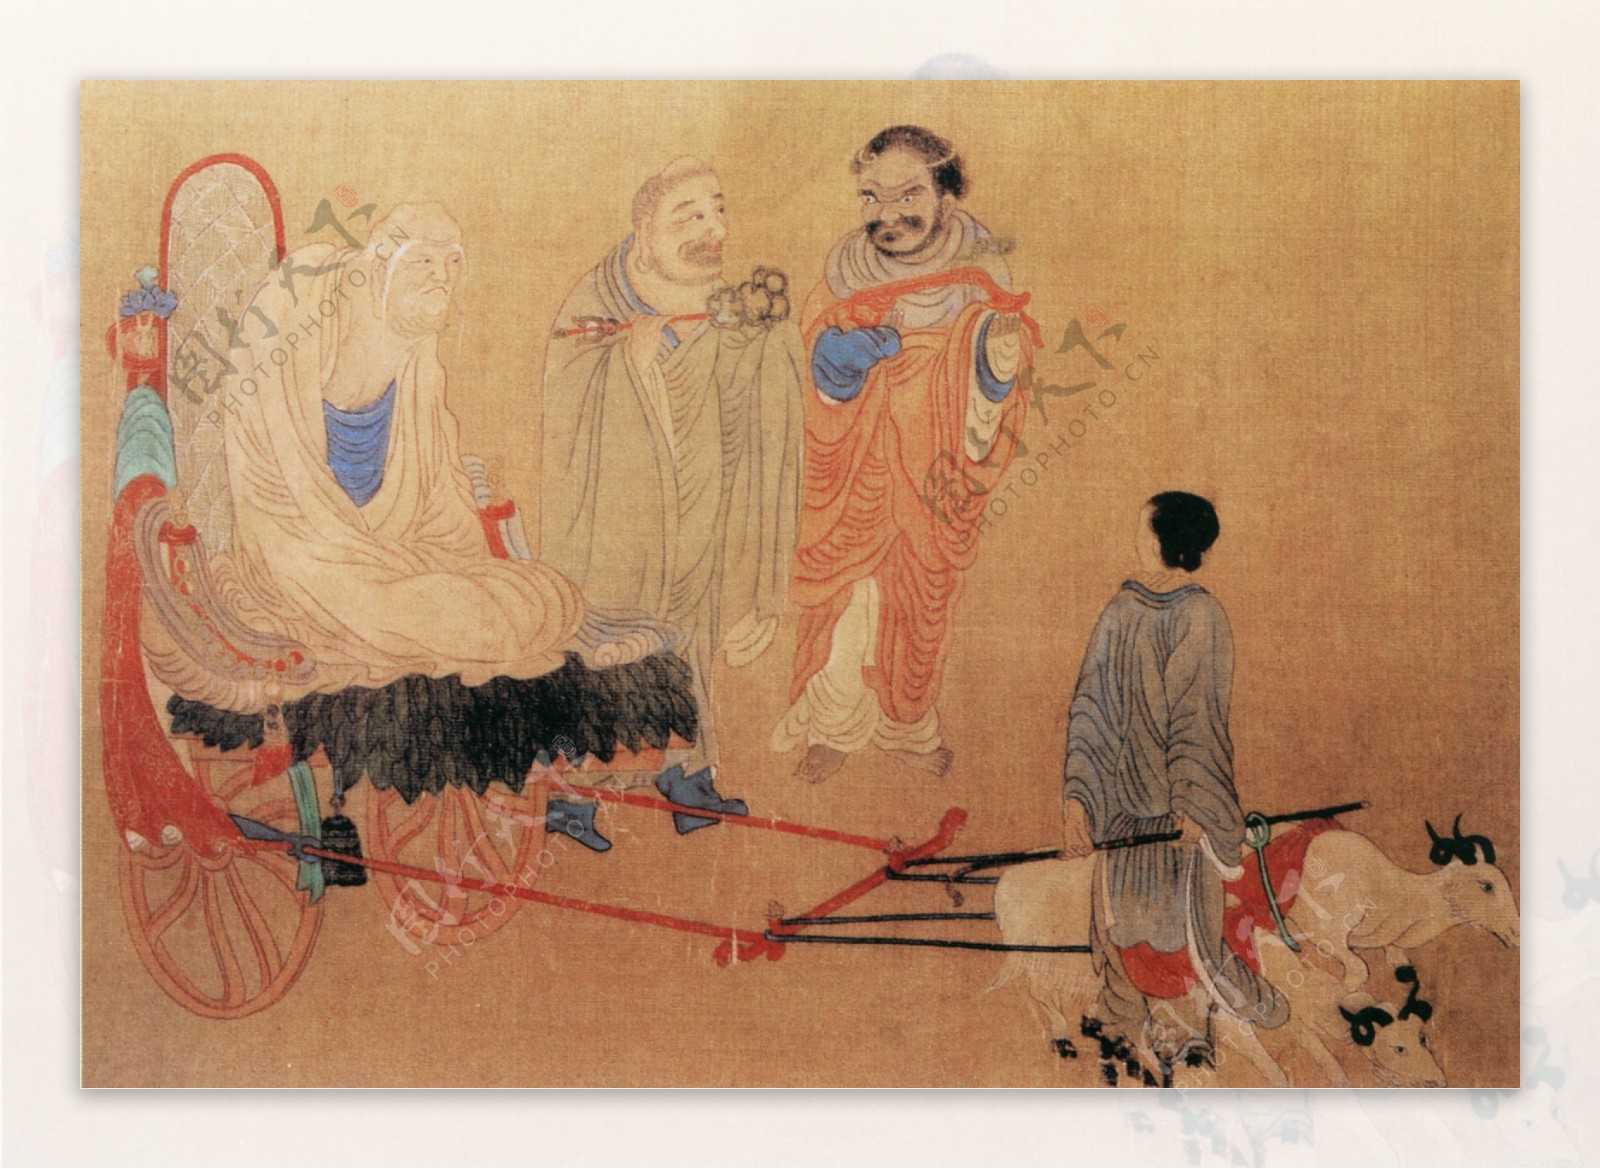 明朝古代人物民间人物人物壁画中国文化人物画像中国风中华艺术绘画